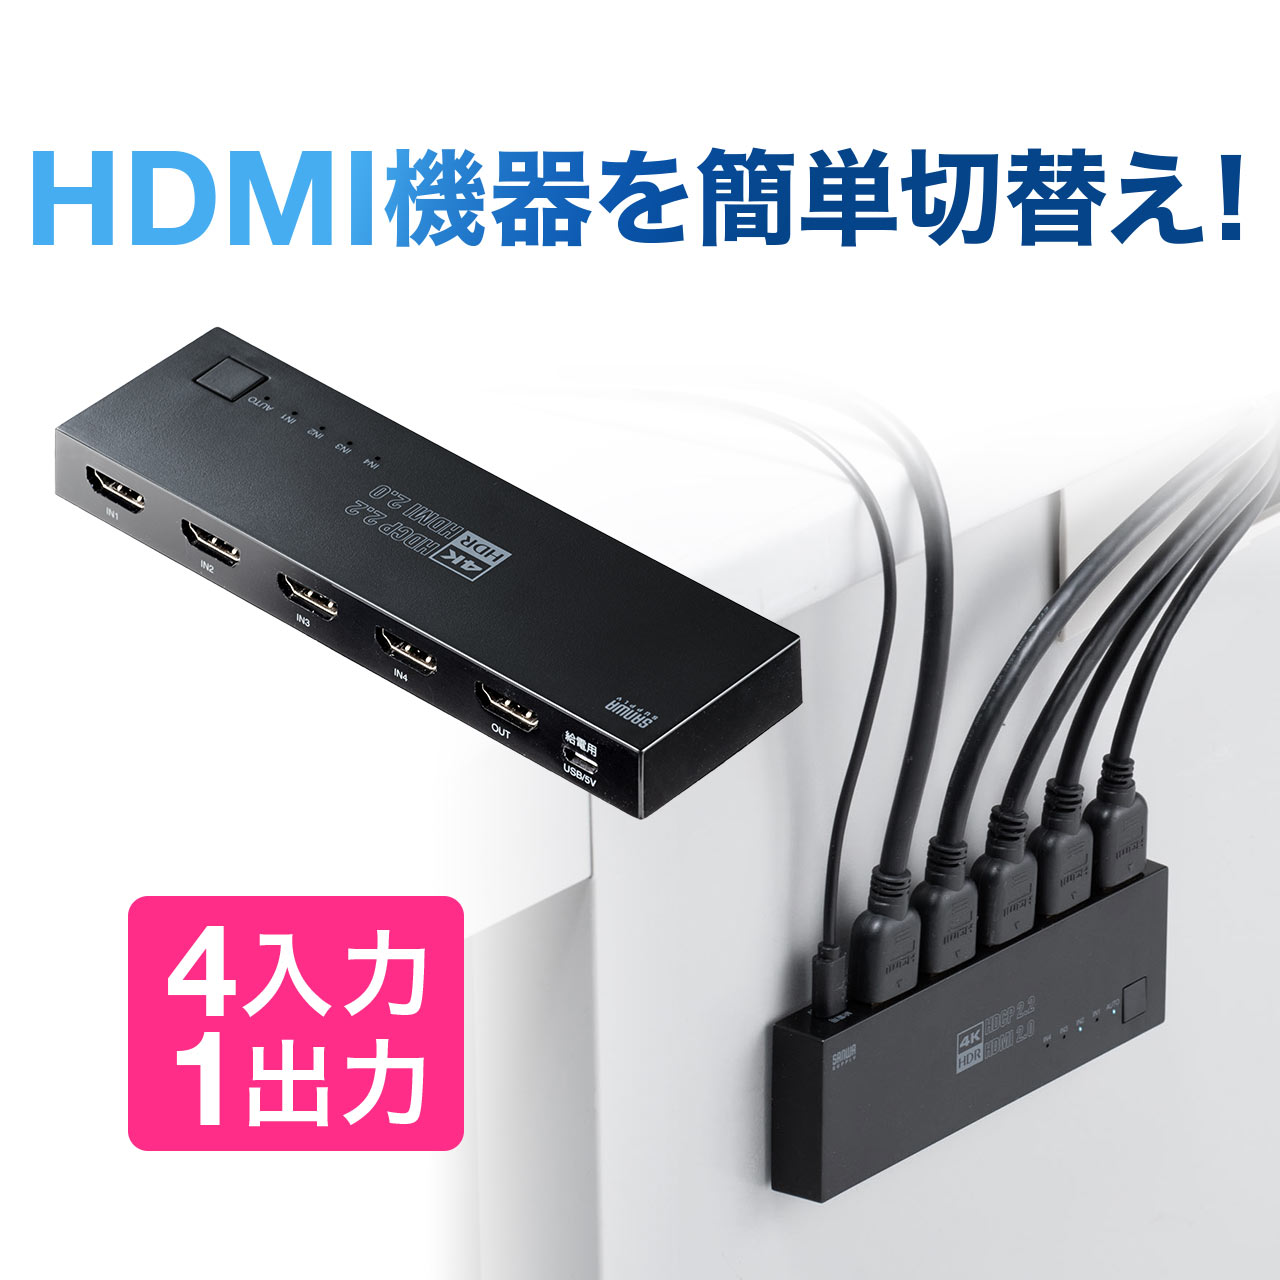 400-SW036 サンワダイレクト限定品 送料無料 HDMI 贈物 国産品 切替器 4K 60Hz HDR マグネットシート付 4入力1出力 パソコン 手動切り替え HDCP2.2 セレクター 自動